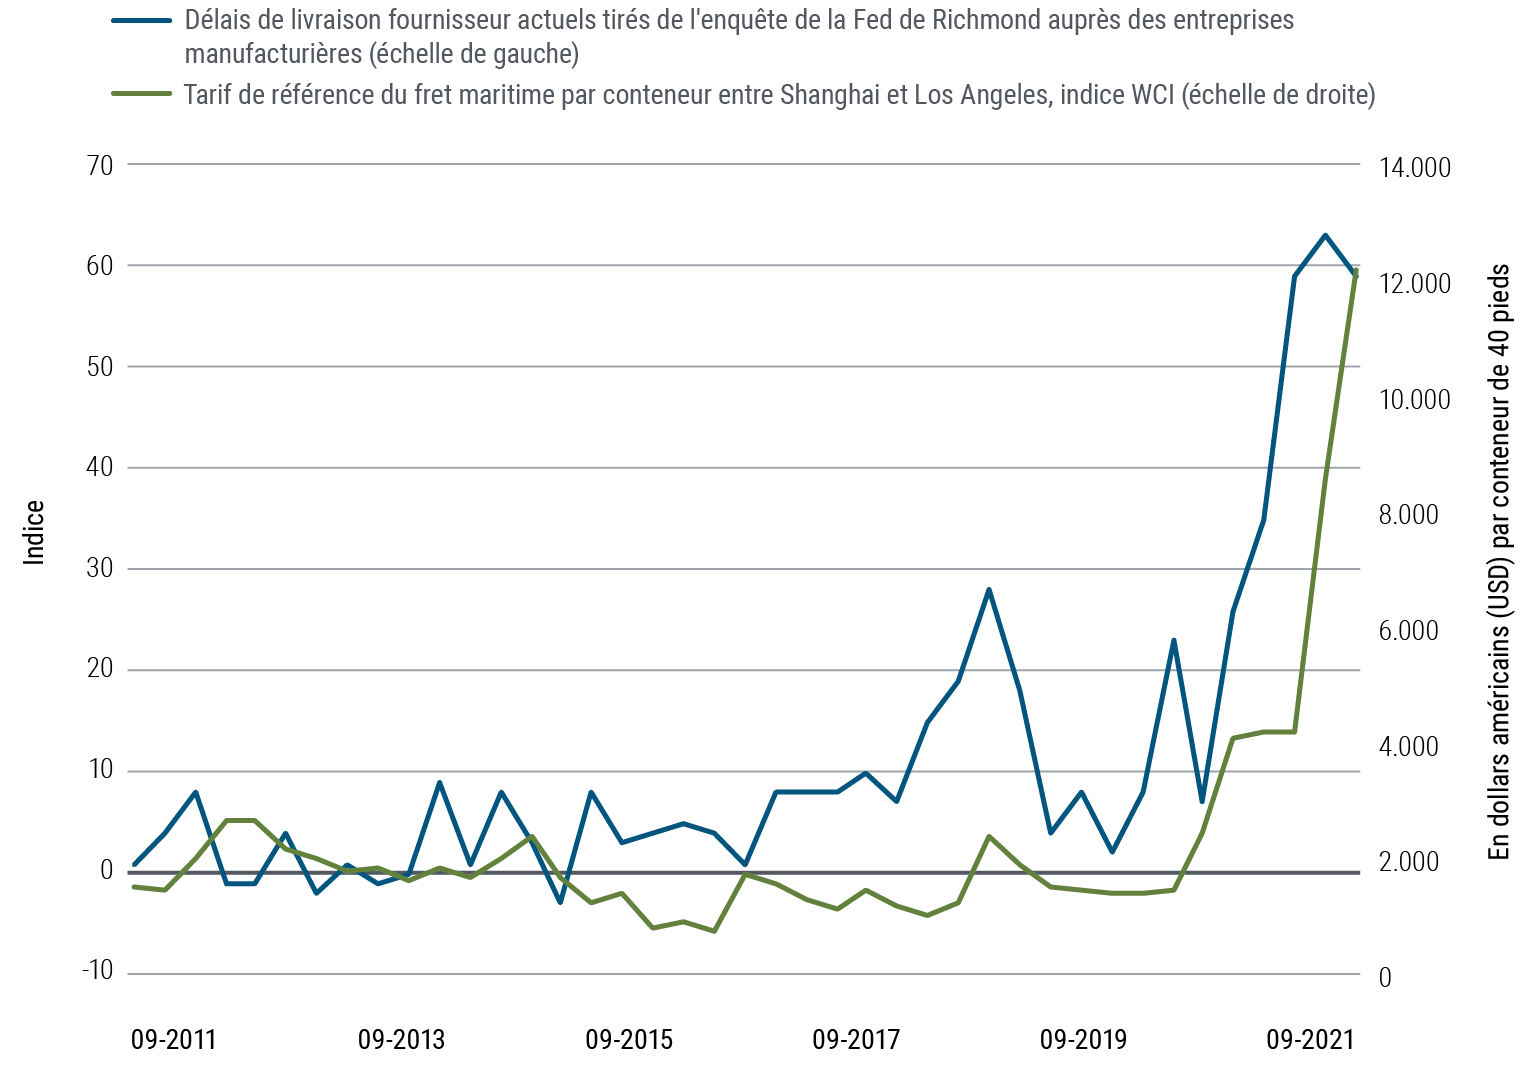 La Figure 3 est un graphique linéaire représentant deux séries de données qui vont de septembre 2011 à septembre 2021. L'indice des délais de livraison fournisseur actuels tiré de l'enquête de la Fed de Richmond auprès des entreprises manufacturières passe de 1 à 59 au cours de cette période. Il commence par évoluer en tôle ondulée avant d'amorcer une forte hausse en 2020 pour culminer à 63 en juin 2021. Le tarif de référence du fret maritime par conteneur entre Shanghai et Los Angeles (indice WCI) grimpe de 1 524 USD en septembre 2011 à 12 172 USD en septembre 2021, avec une nette accélération en 2021. Cette figure représente le coût moyen du transport d'un conteneur standard de 40 pieds entre Shanghai et Los Angeles.